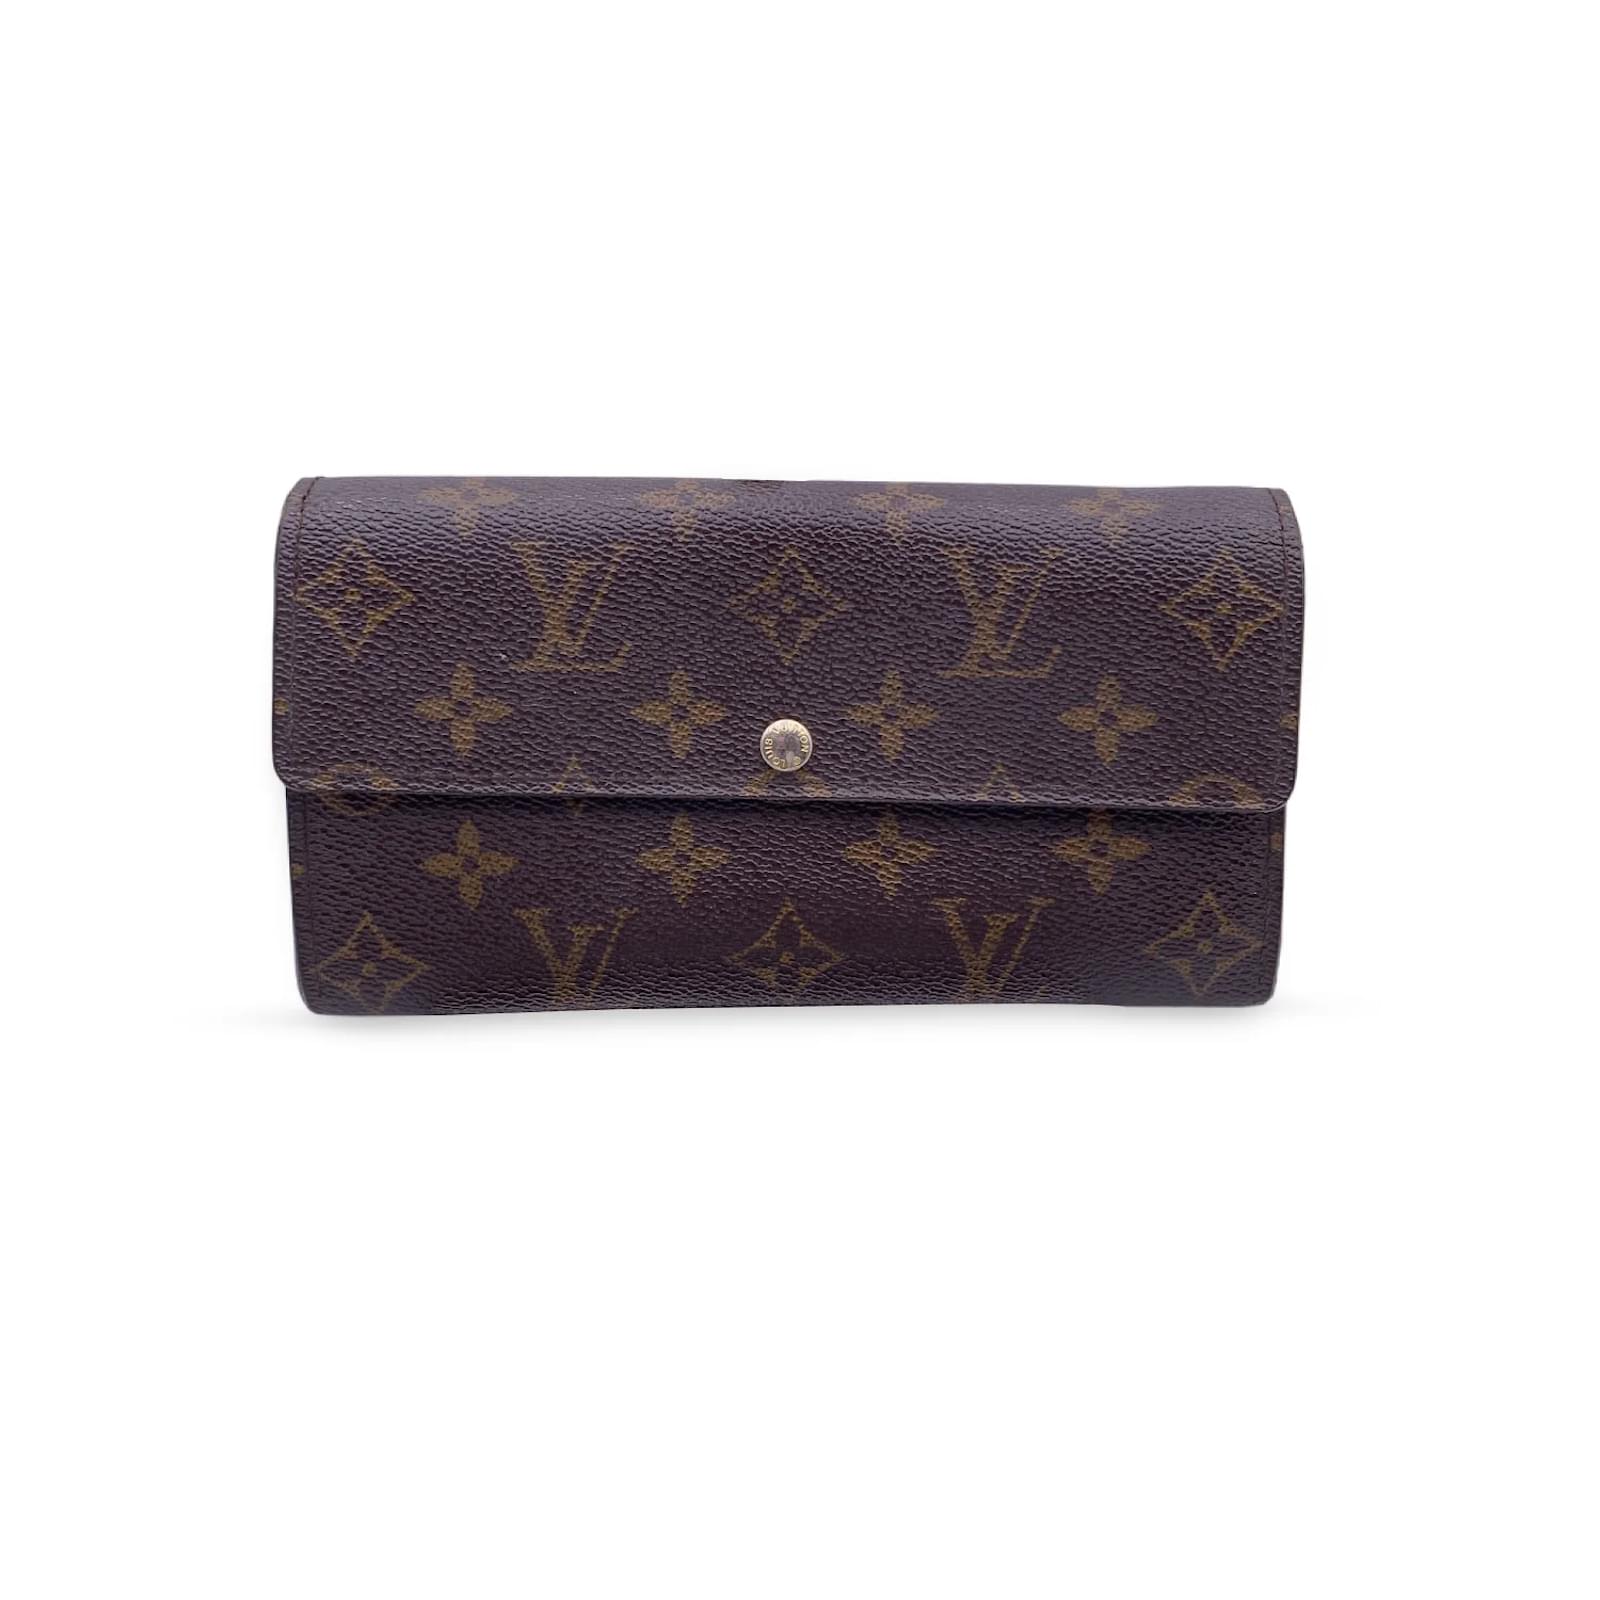 Shop Louis Vuitton SARAH Sarah wallet (PORTEFEUILLE SARAH, M61182